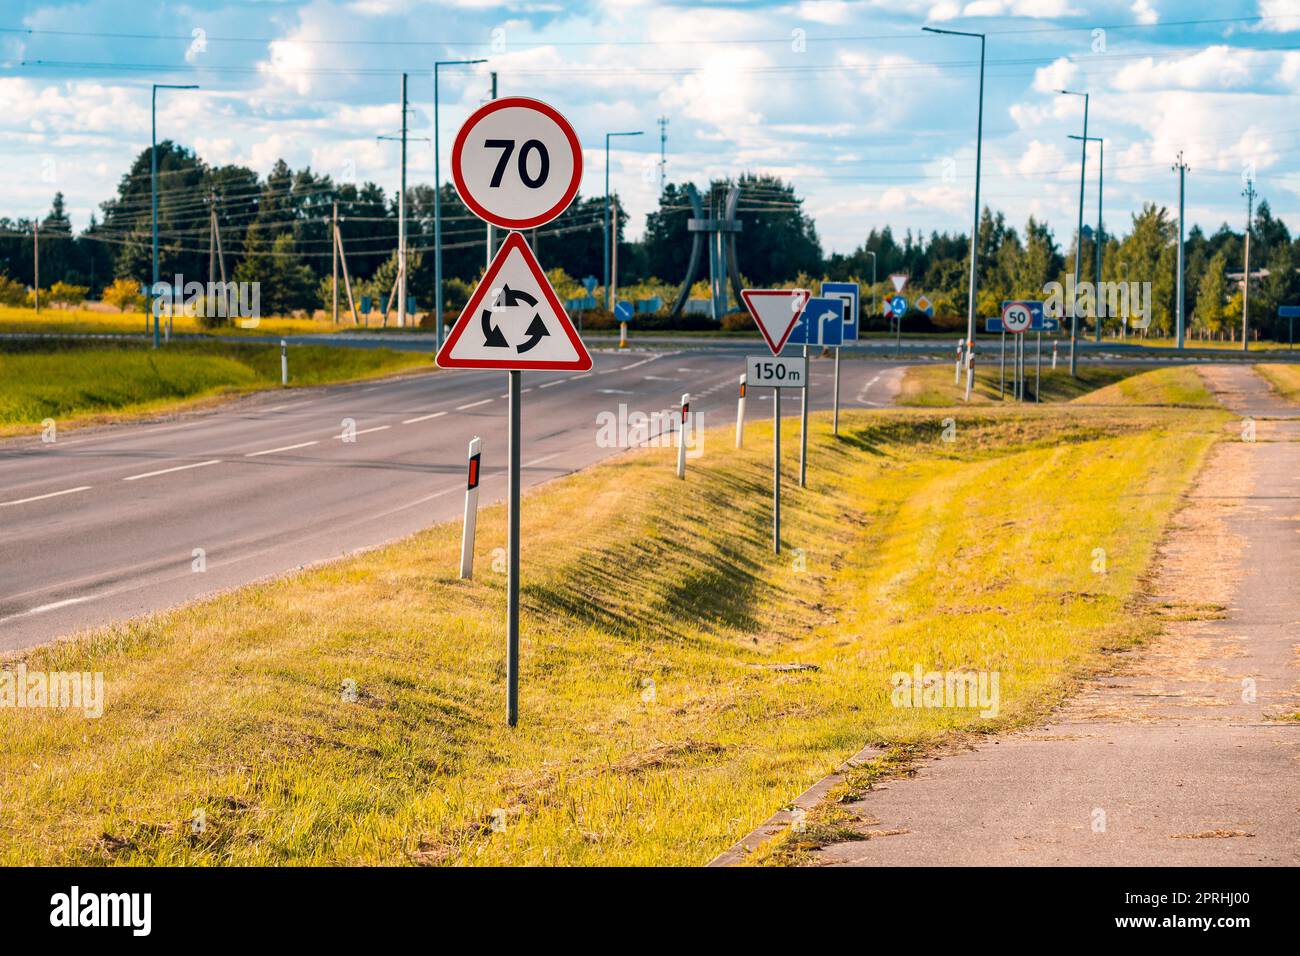 Limite de vitesse avec l'autoroute 70, rond-point devant des panneaux routiers Banque D'Images